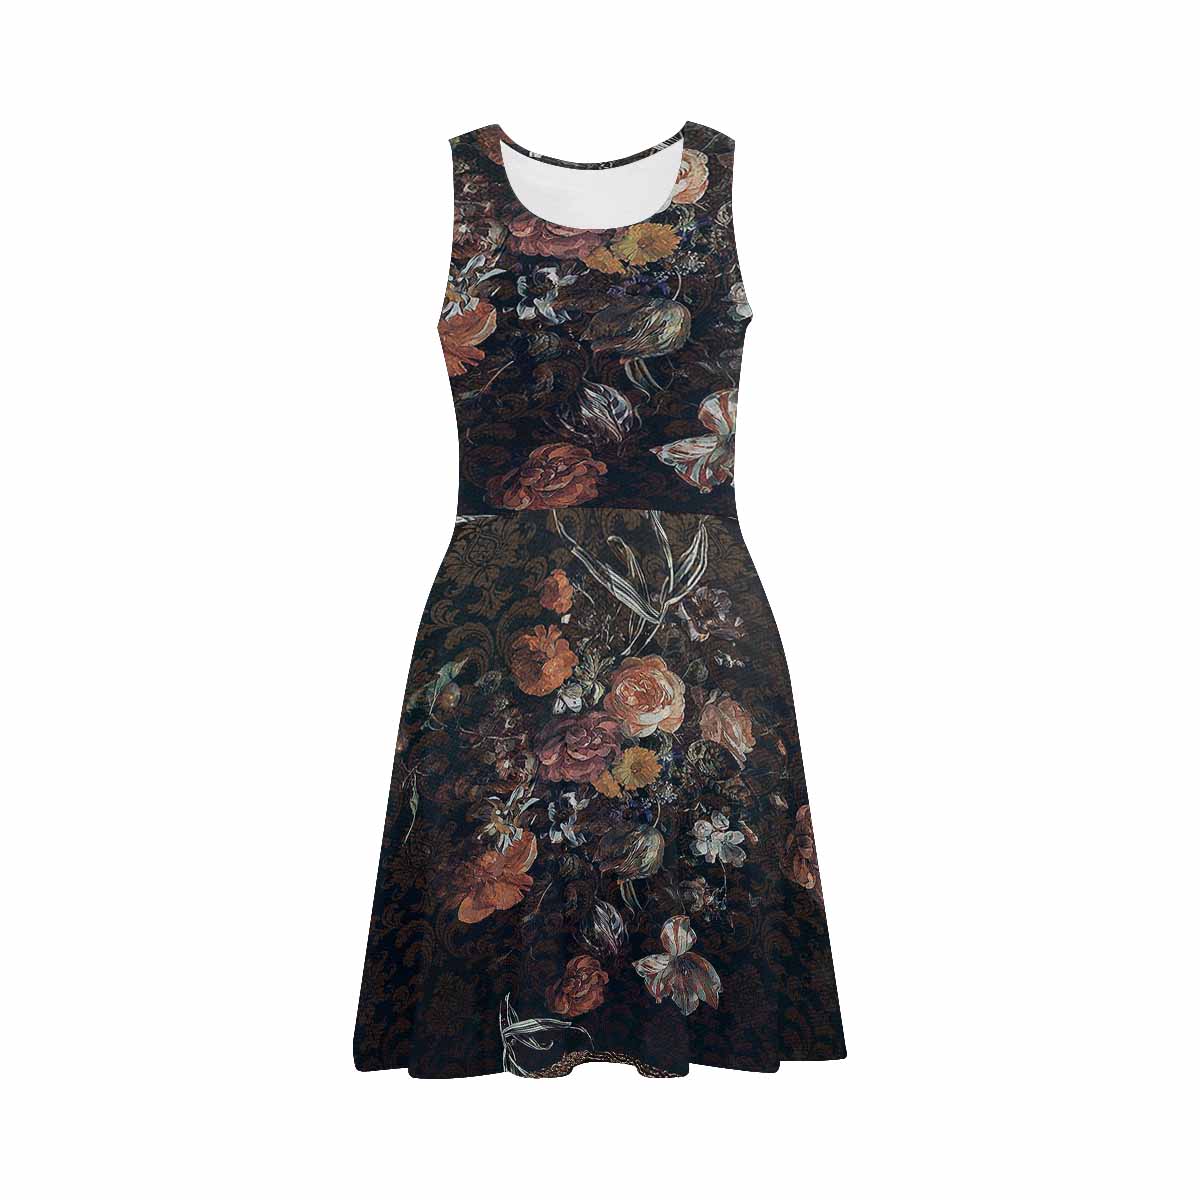 Antique General summer dress, MODEL 09534, design 08